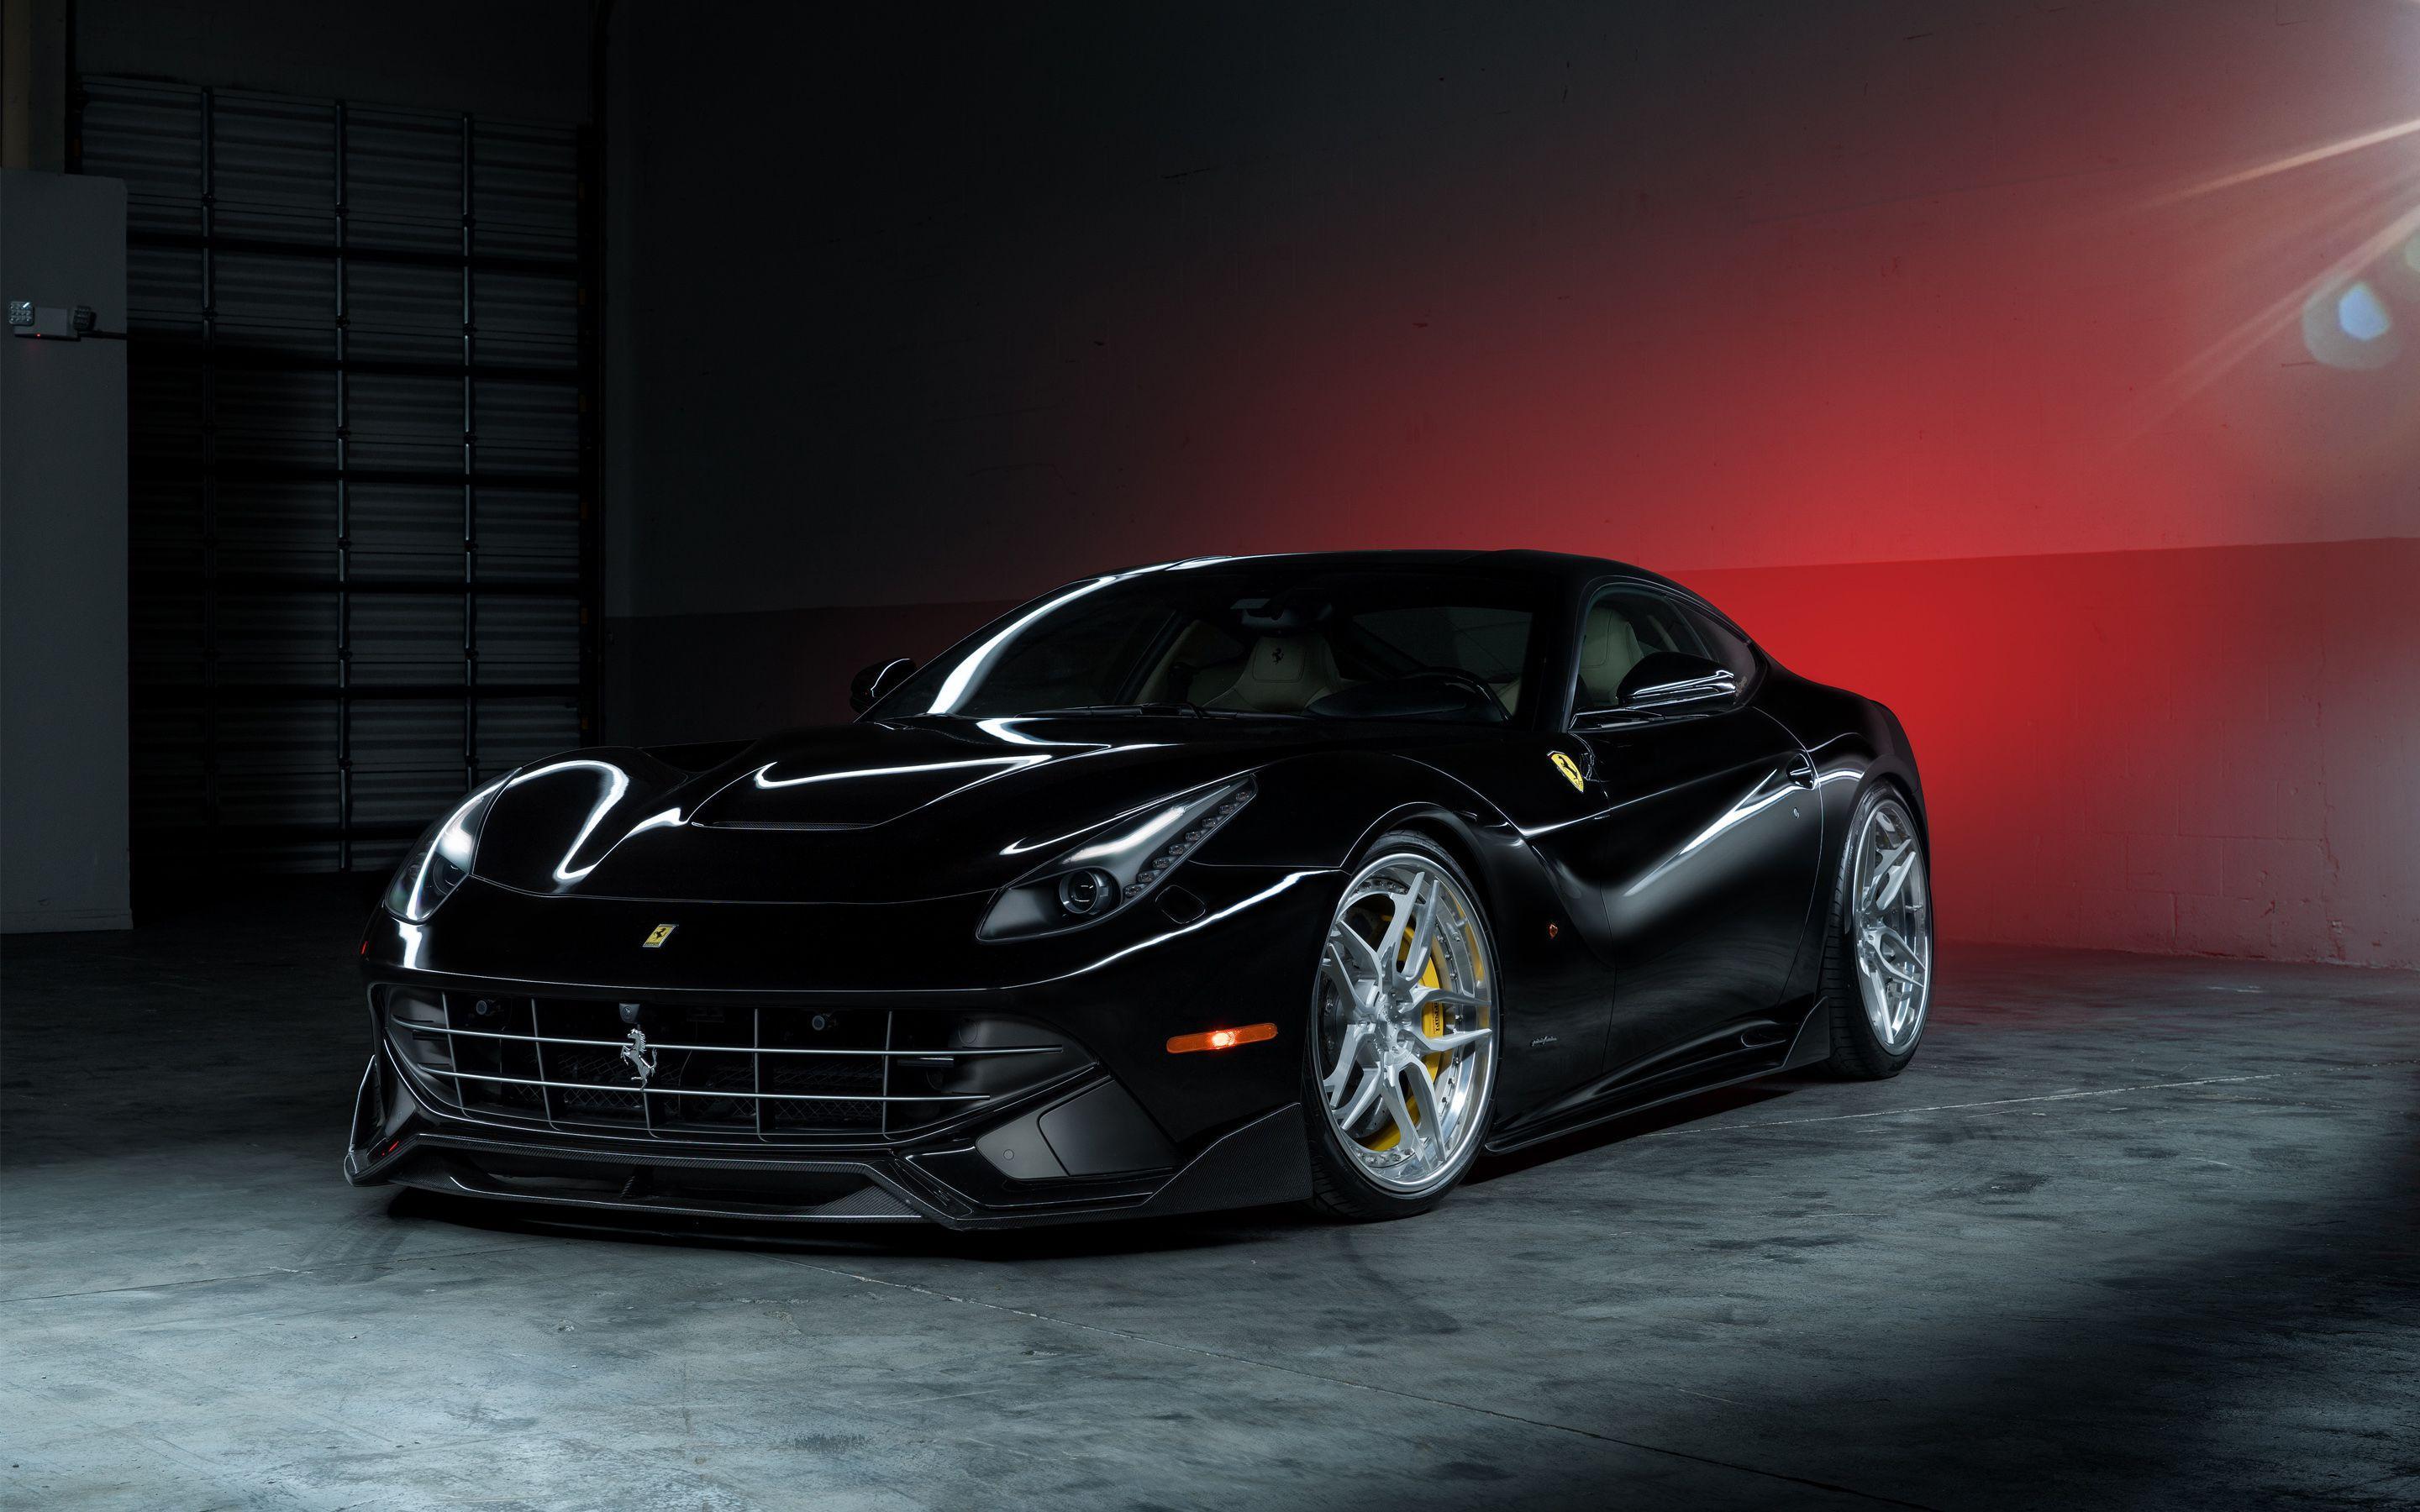 Ferrari F12 Wallpaper, Full HD 1080p, Best HD Ferrari F12 Pics